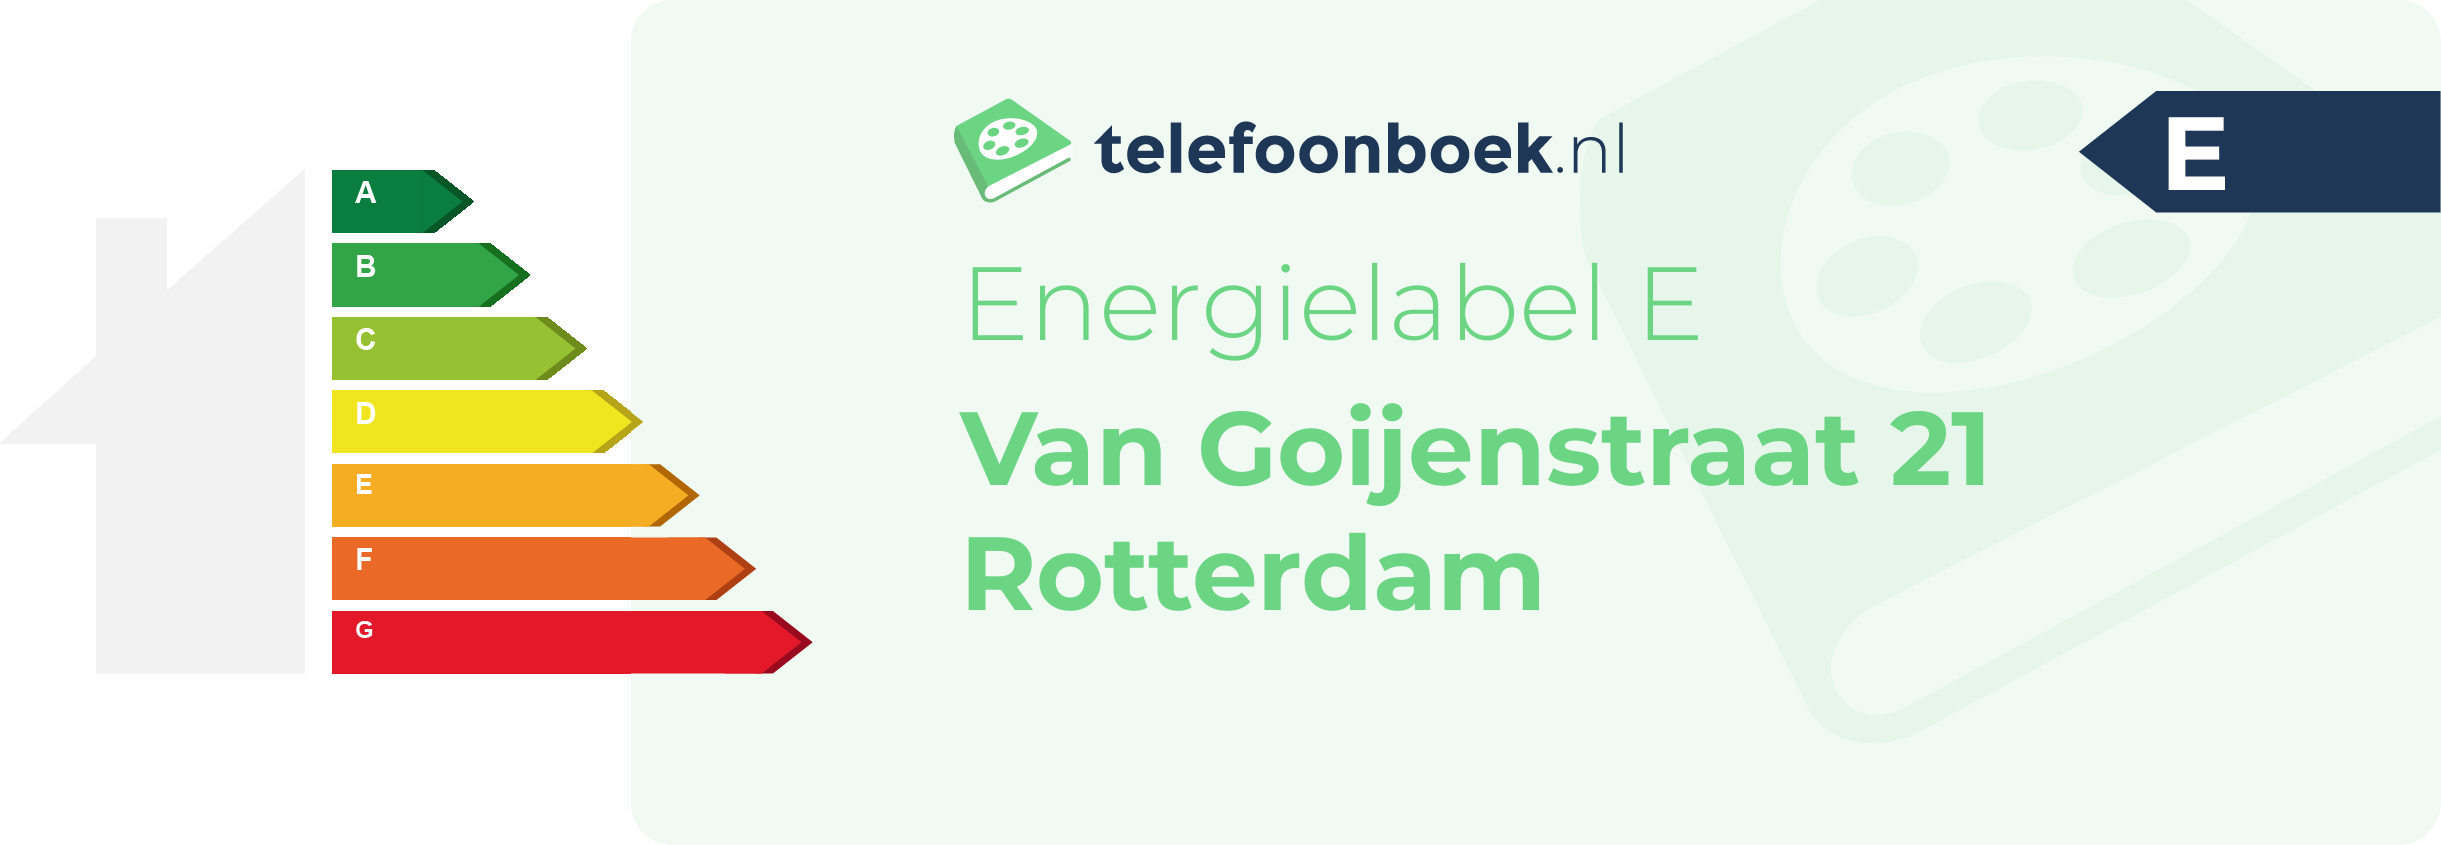 Energielabel Van Goijenstraat 21 Rotterdam